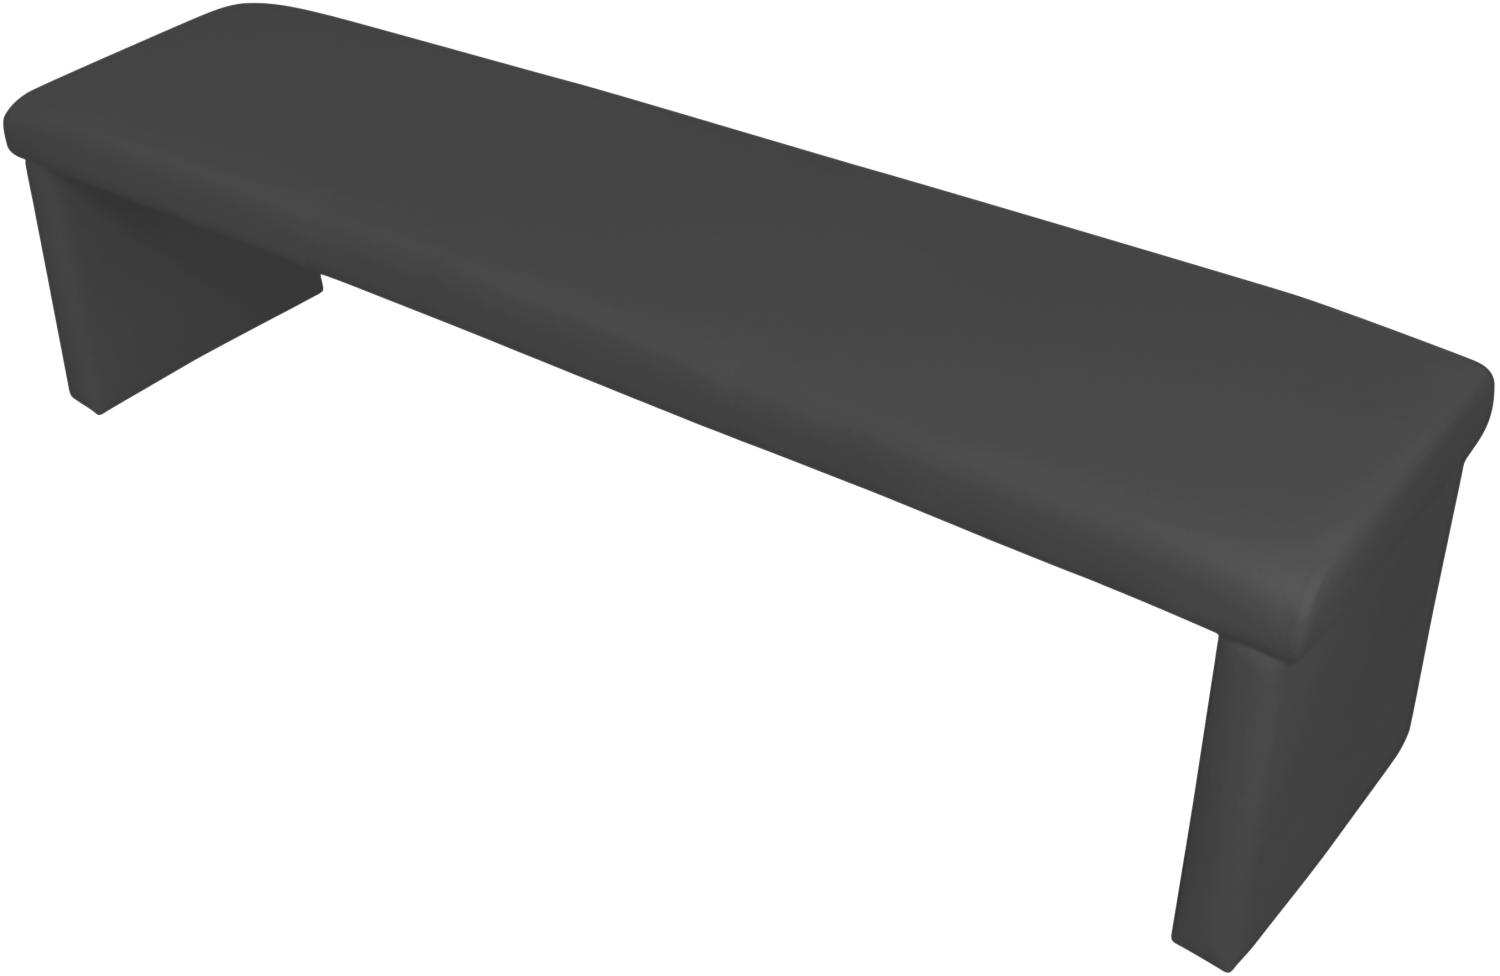 byLIVING Vorbank Cardy / Moderne Sitzbank mit Kunstleder in schwarz / Bank ohne Rückenlehne / B 160, H 48, T 45 cm Bild 1